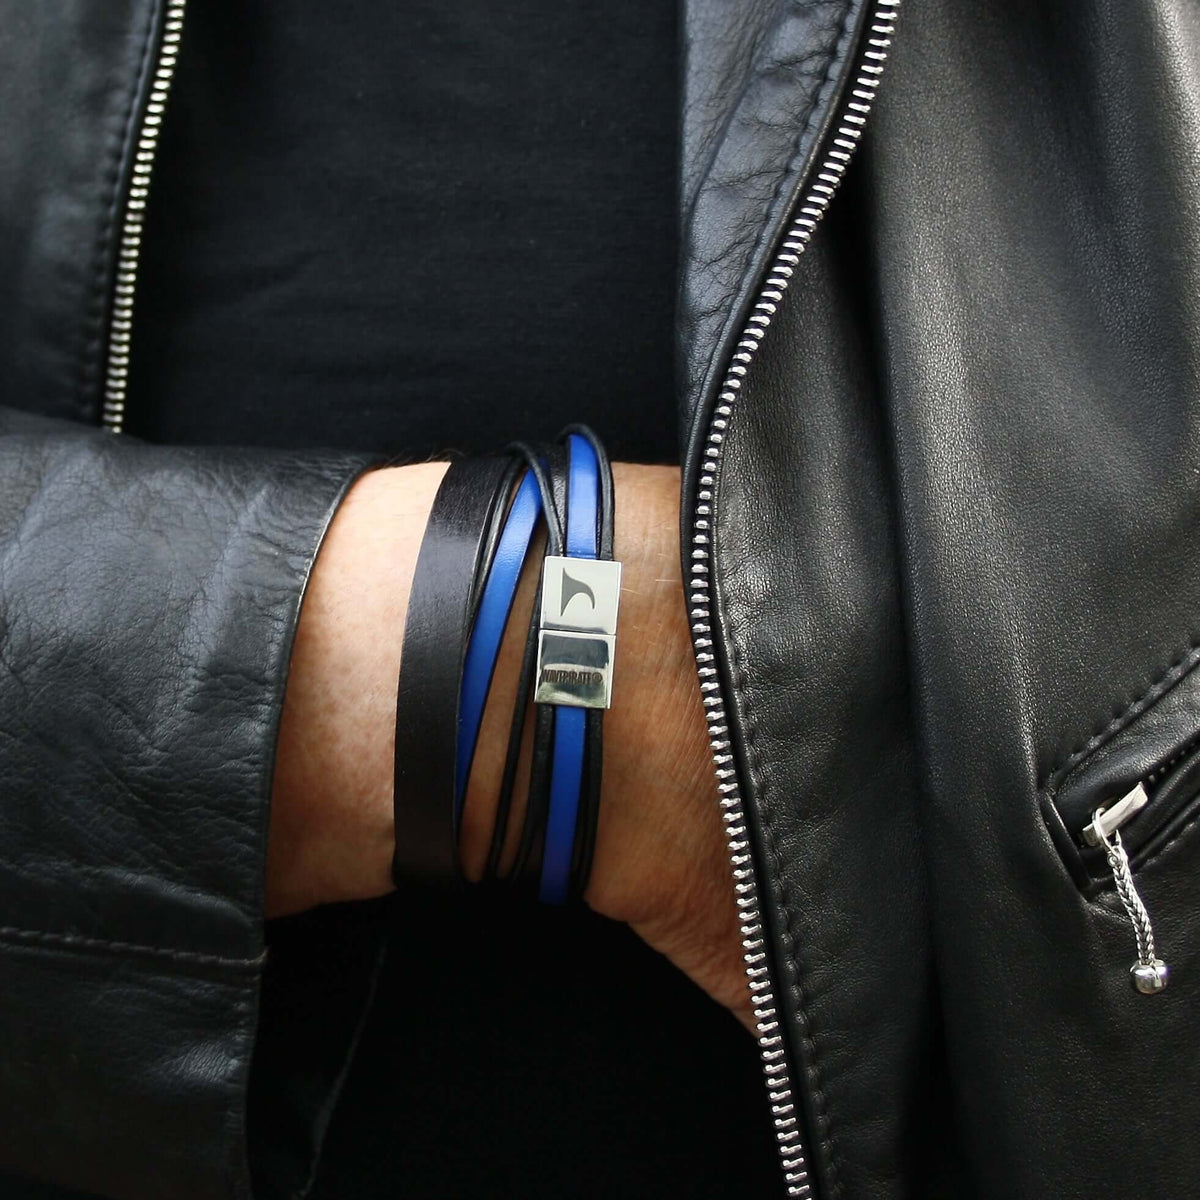 Herren-Leder-Armband-Rockstar-schwarz-blau-flach-Edelstahlverschluss-getragen-wavepirate-shop